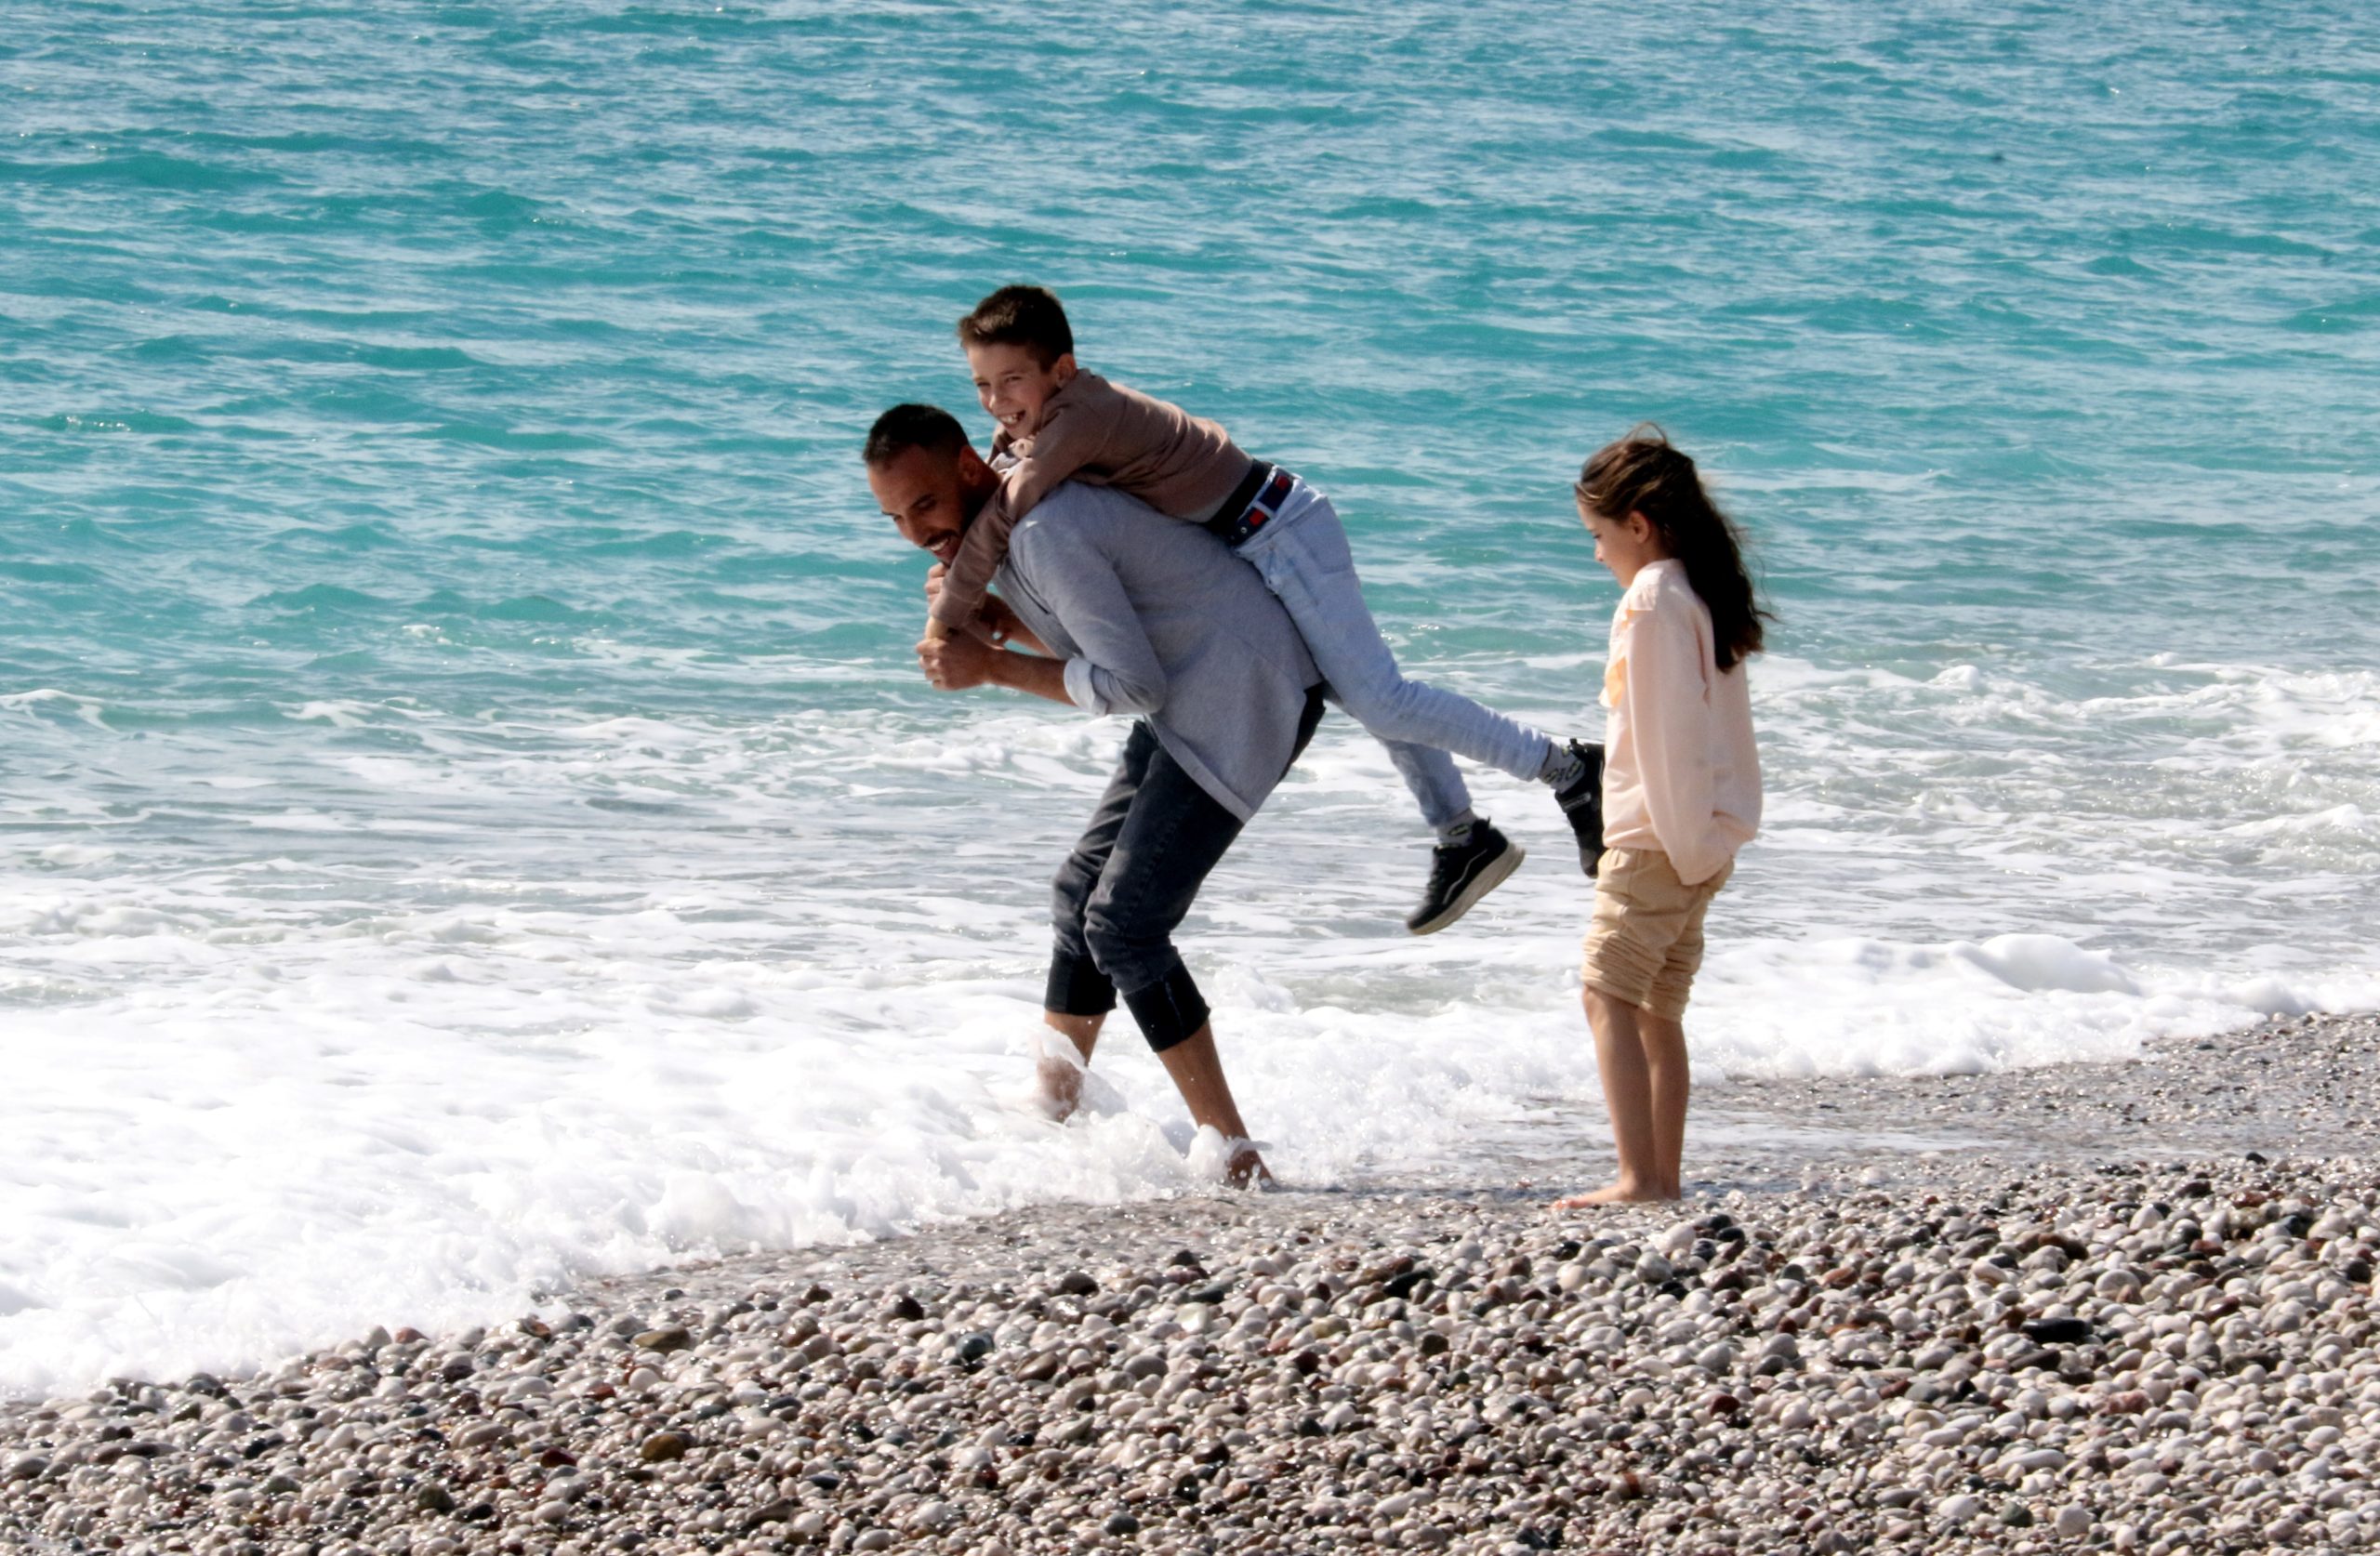 Antalya'da sıcak havaya dayanamayanlar denize girdiler